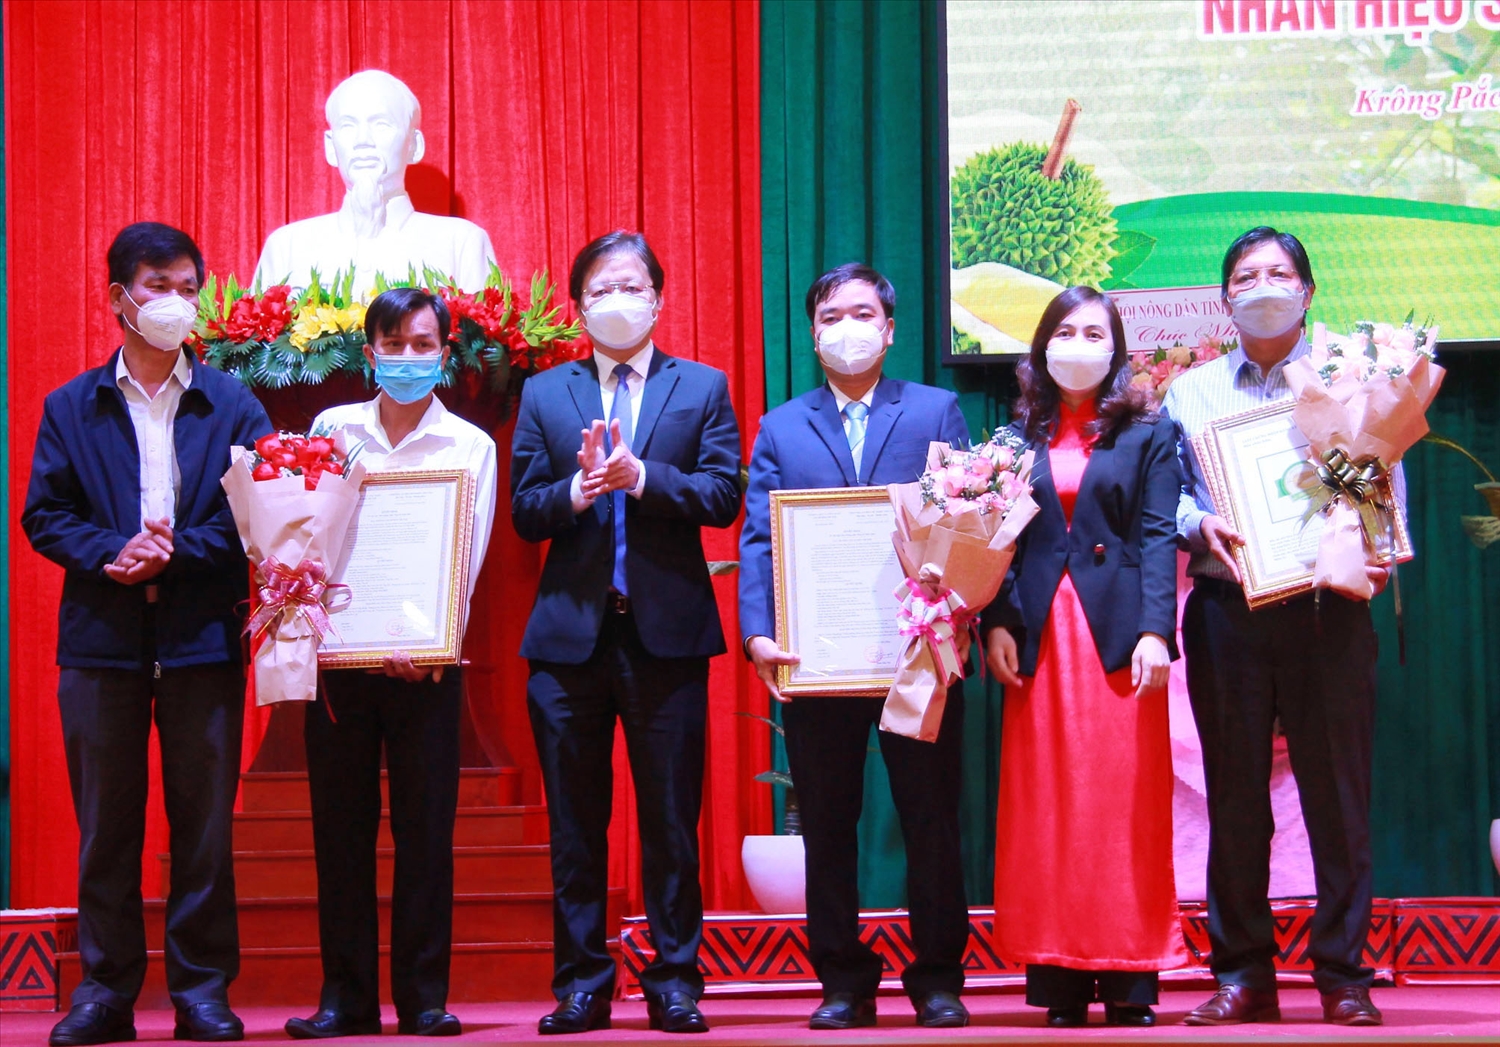 Đại diện các Sở, Hội Nông dân tỉnh Đắk Lắk trao Chứng nhận Nhãn hiệu Sầu riêng Krông Pắc cho huyện Krông Pắc